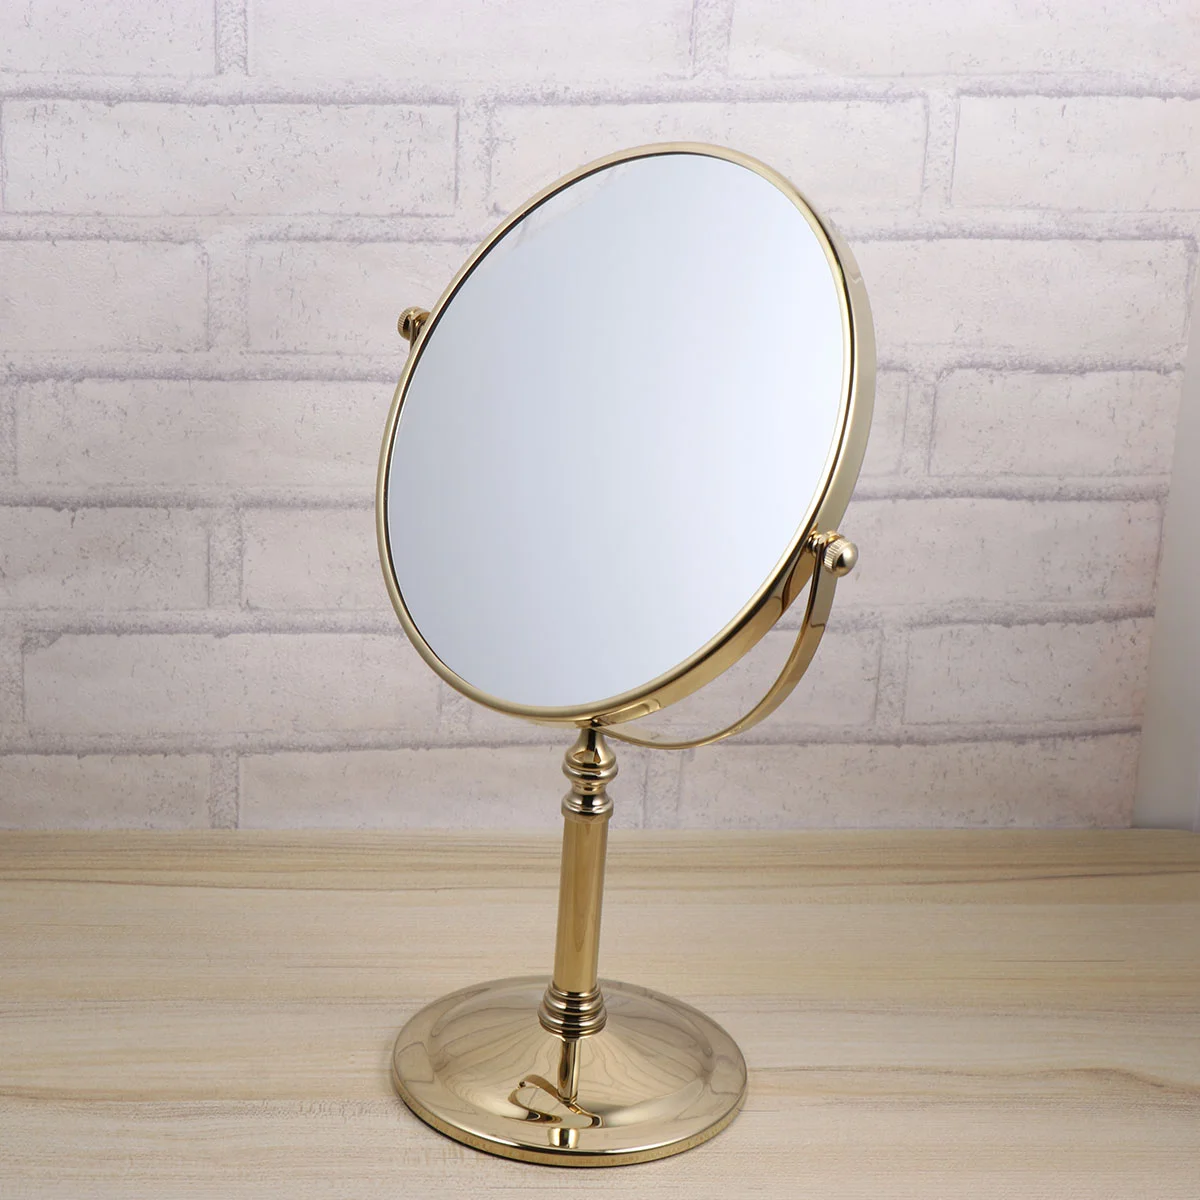 

Двухстороннее увеличительное зеркало для макияжа, зеркало для бритья с вращением на 360 градусов, туалетное зеркало для ванной комнаты, спальни (8 дюймов, 3 раза